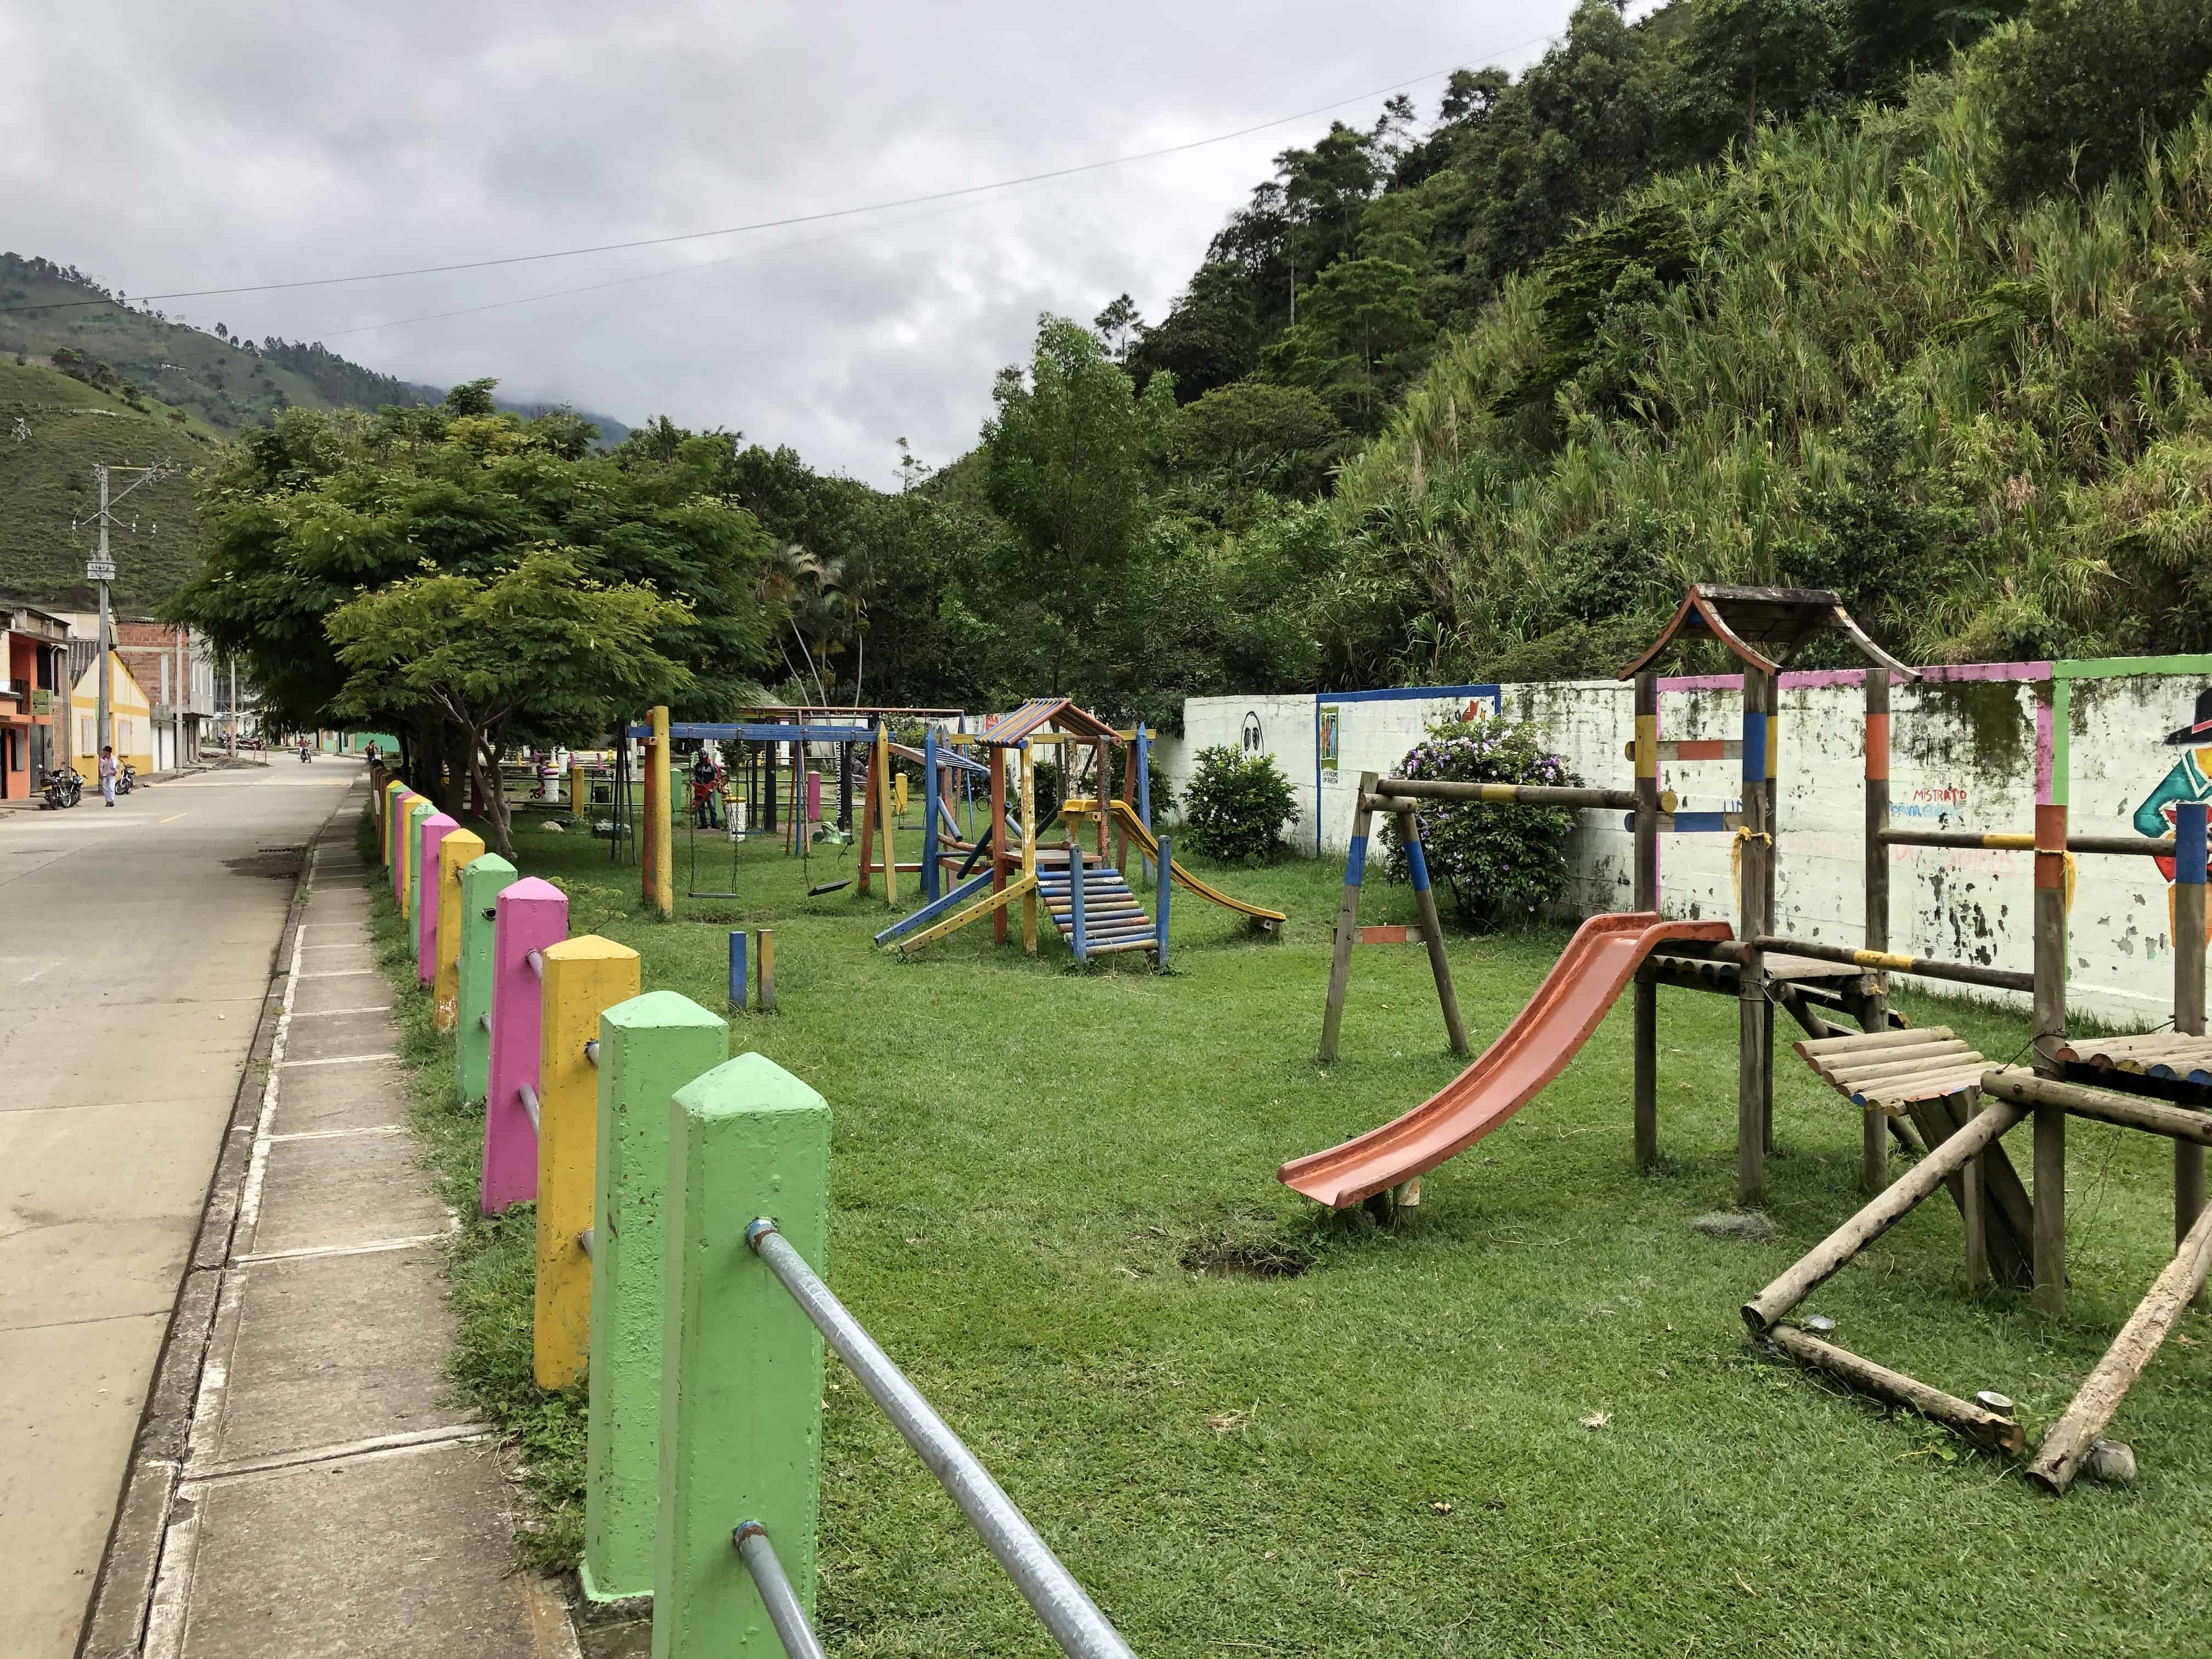 Playground at Parque del Amor